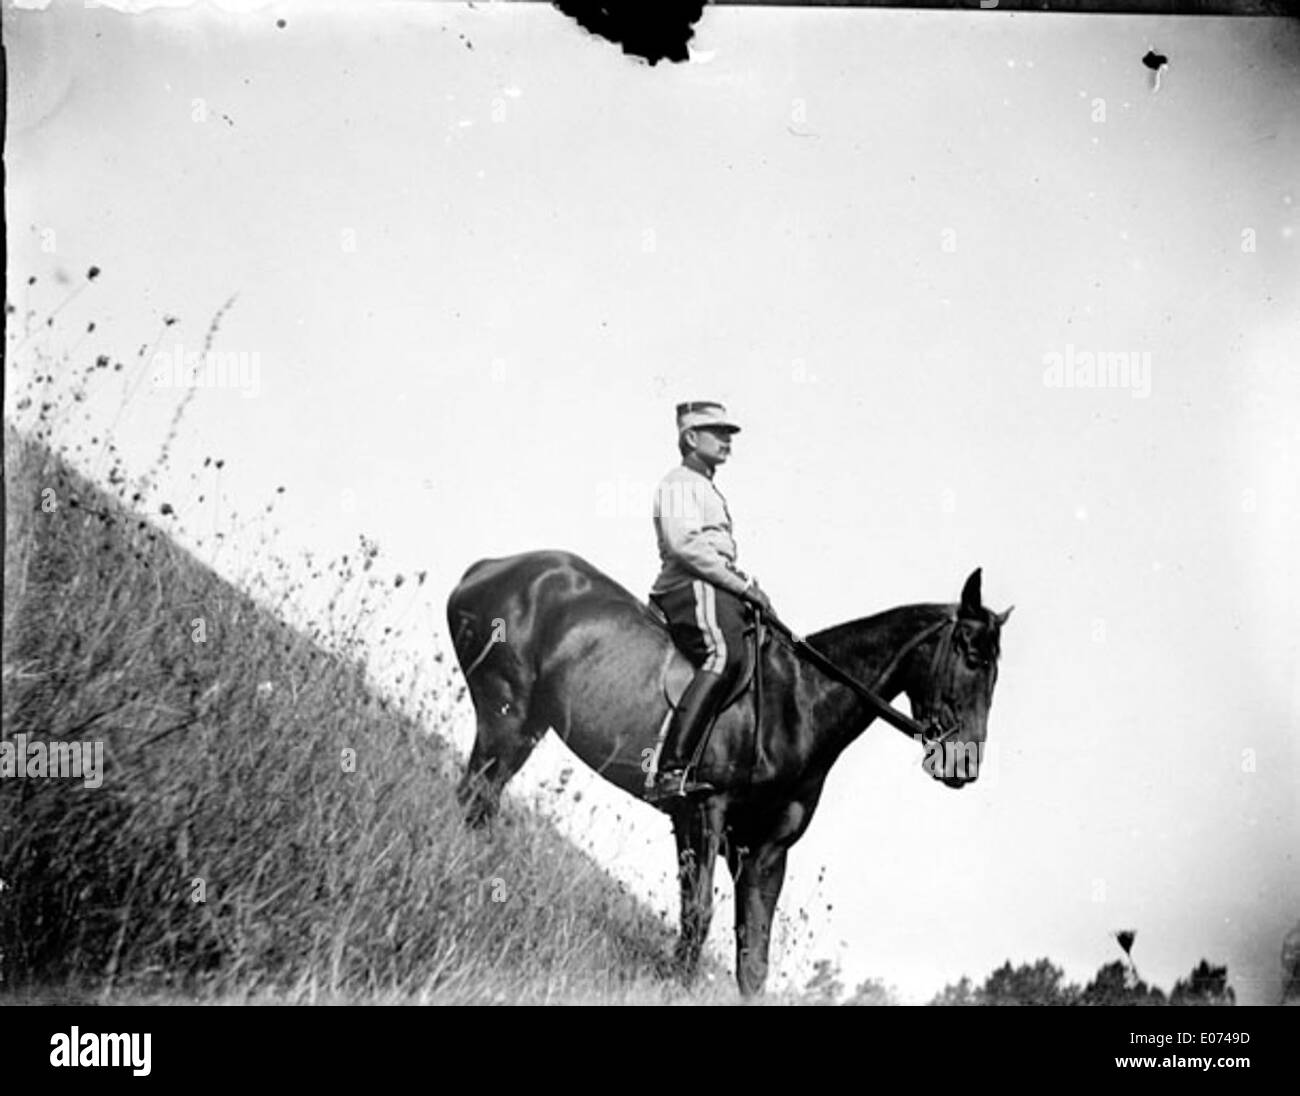 Officier à cheval descendant une pente raide Stock Photo